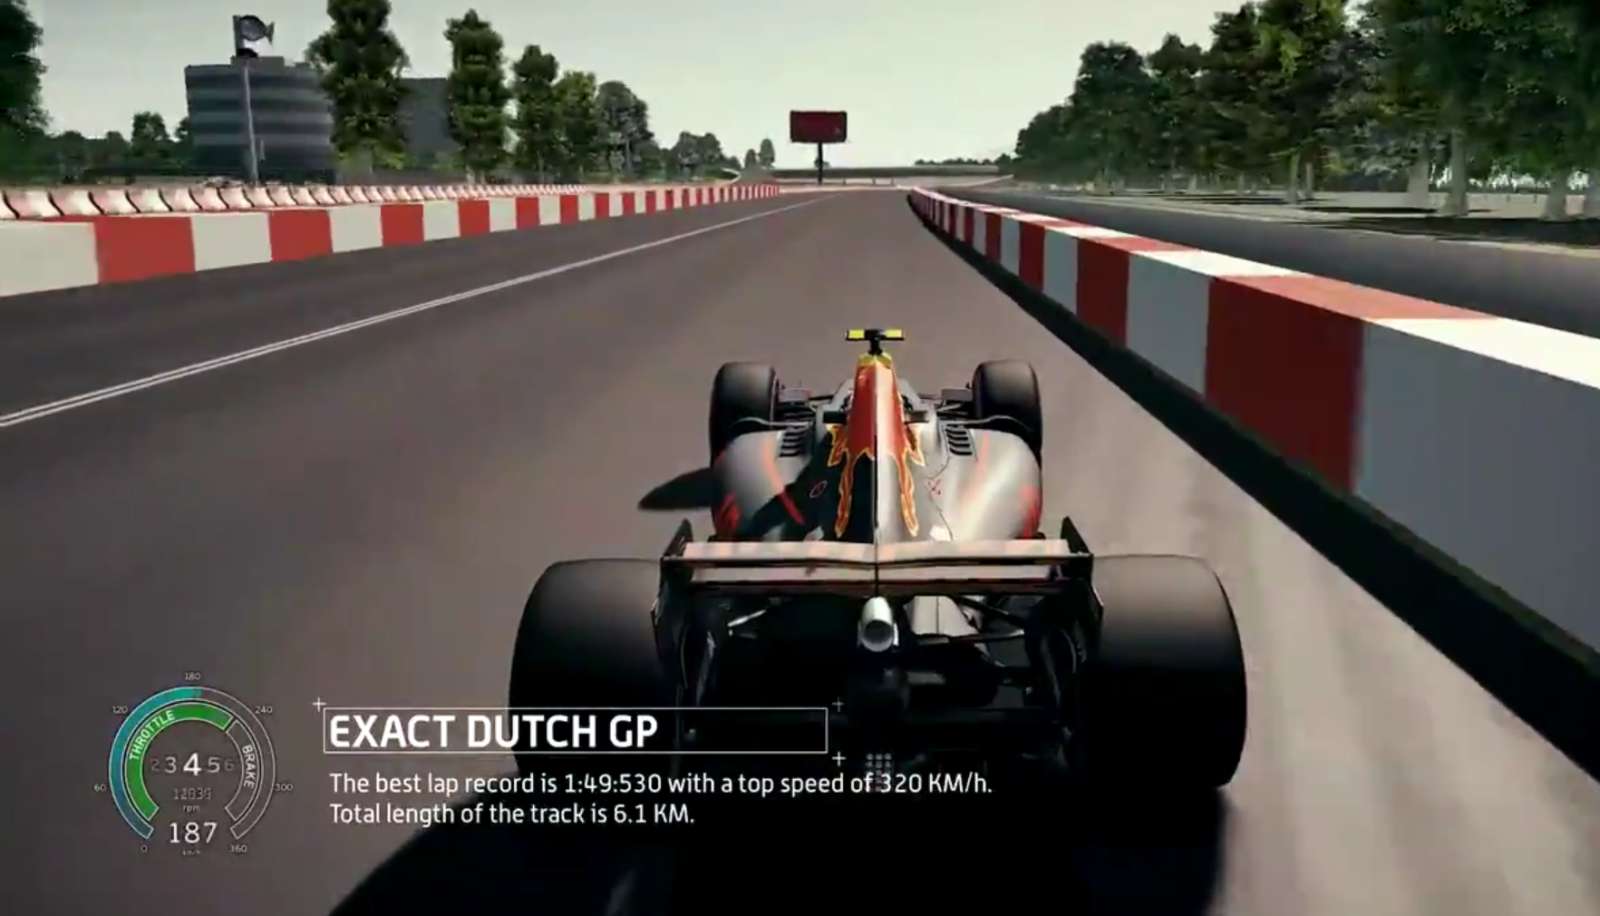 Exact Dutch GP Max Verstappen